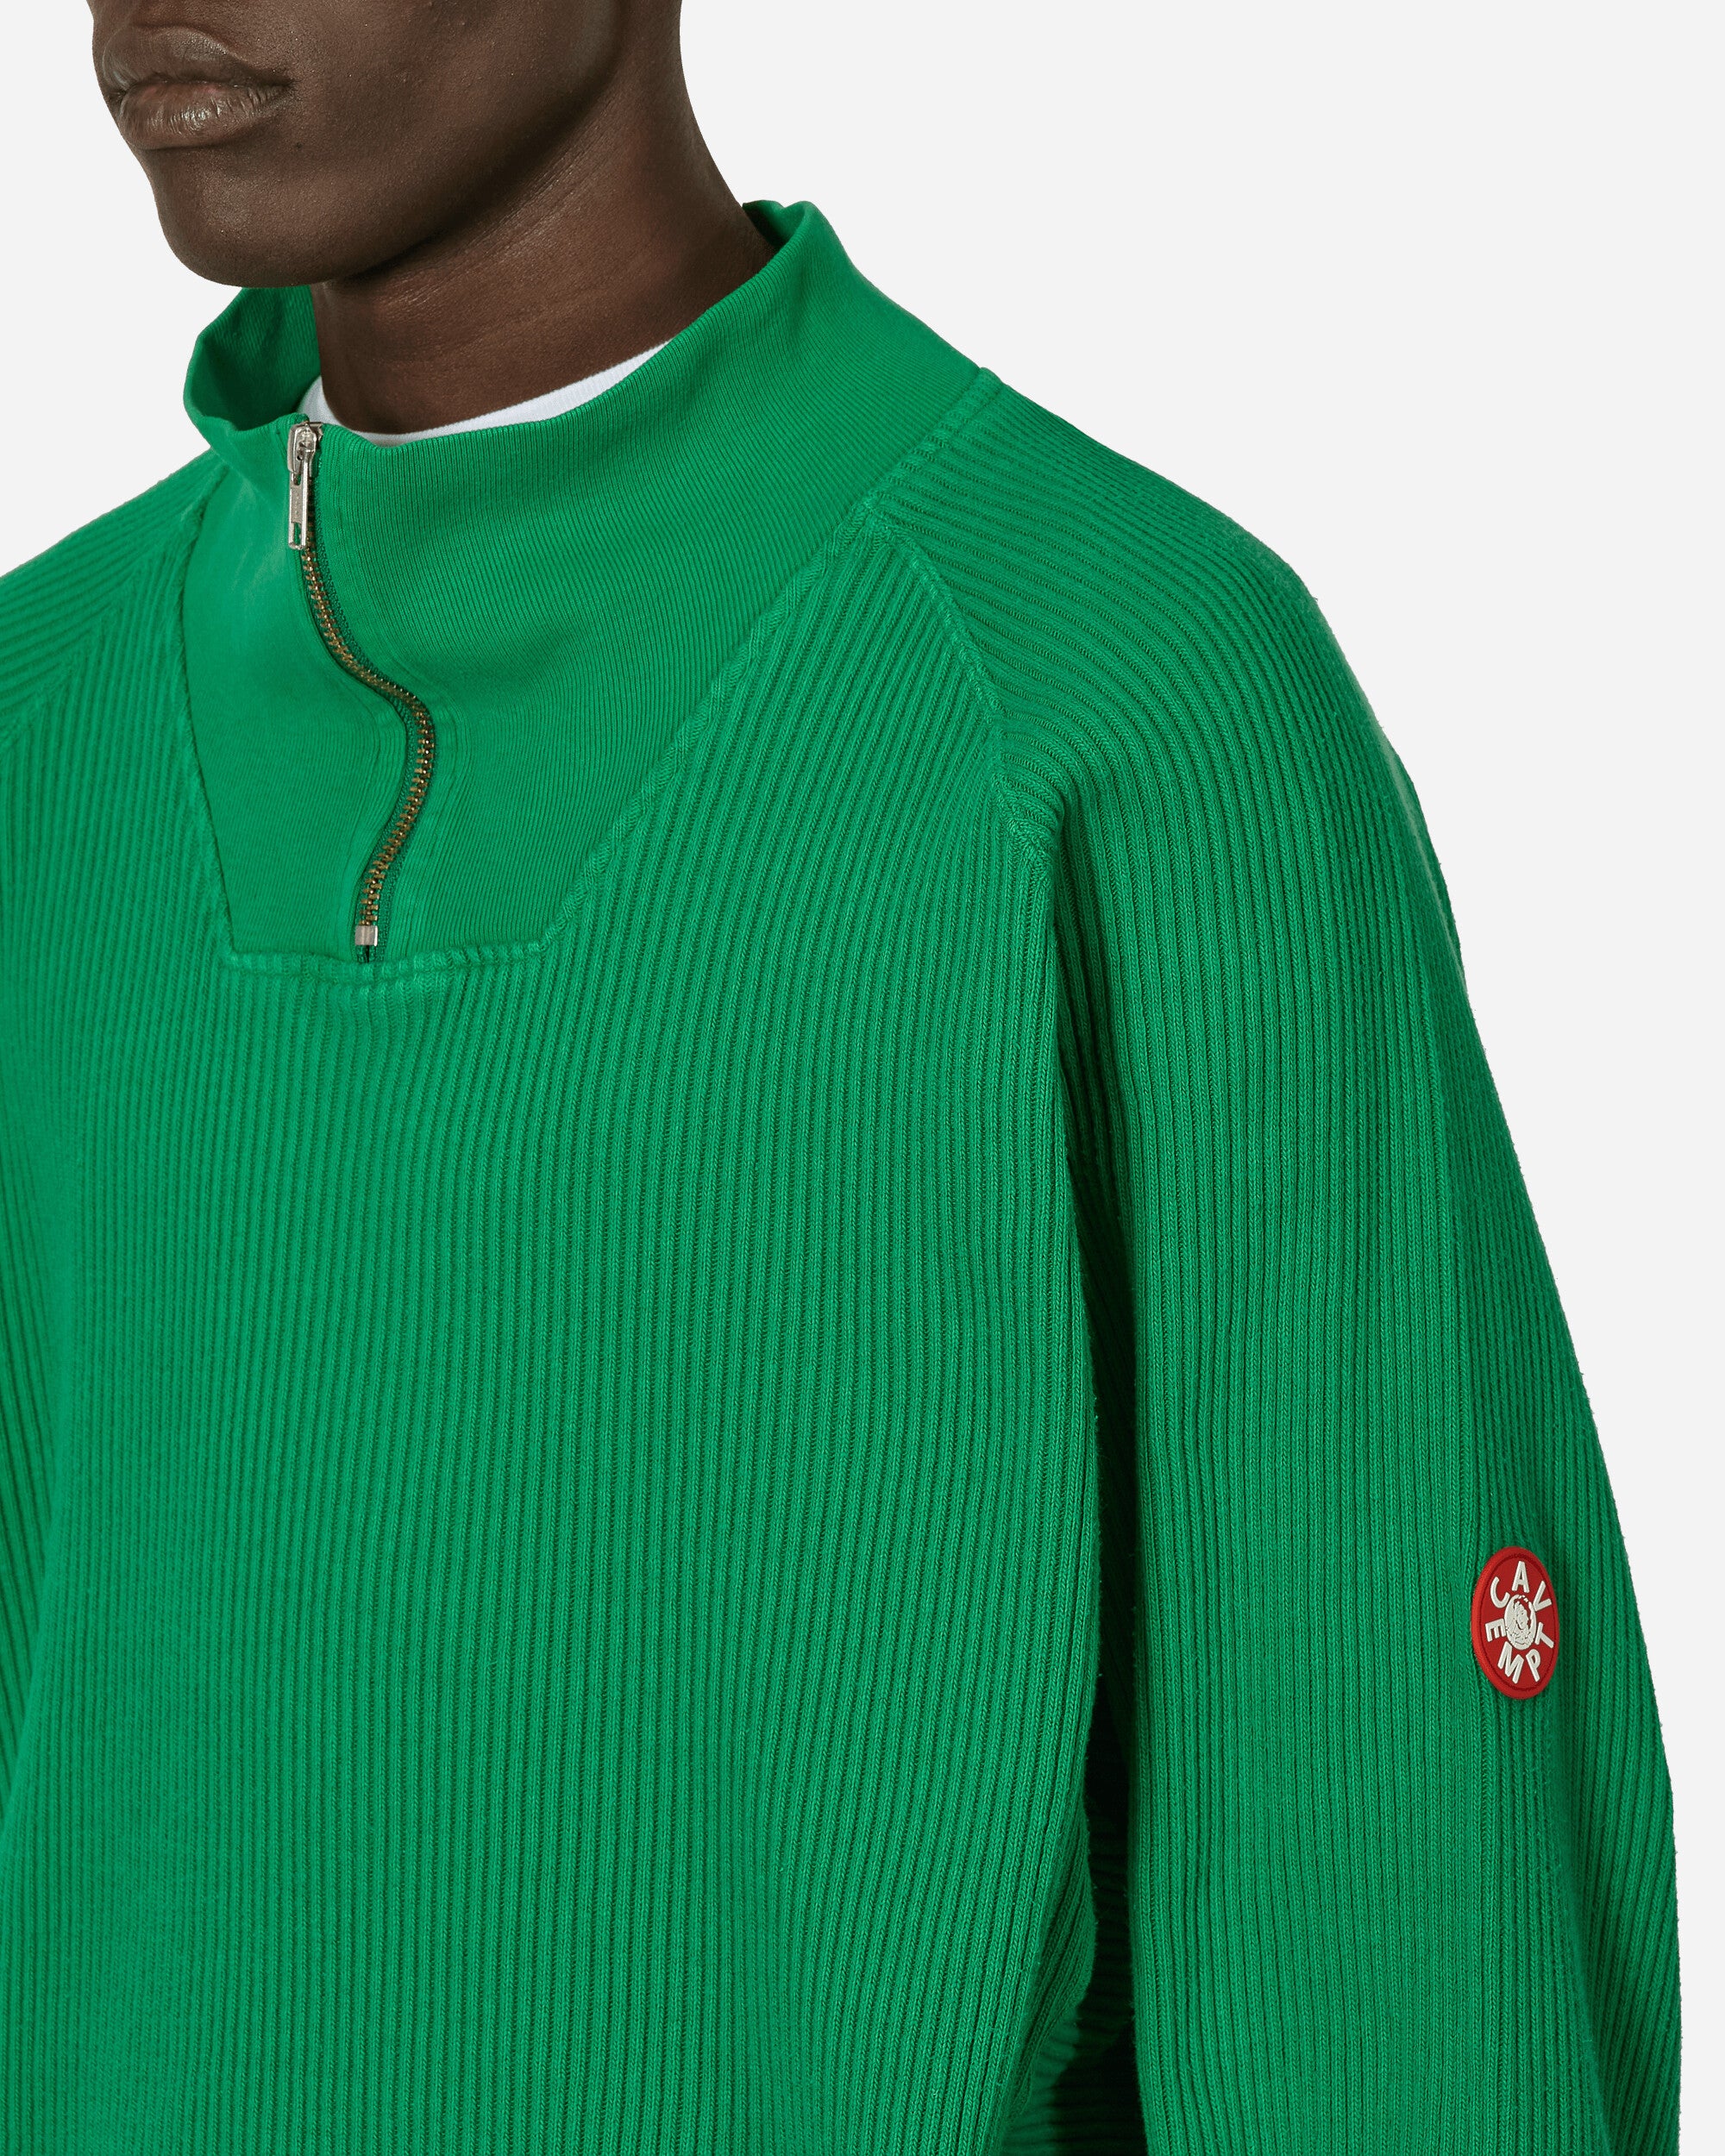 Cav Empt Overdye Wide Rib Cut Half Zip Green Sweatshirts Zip-Ups CES25CS21 GRN